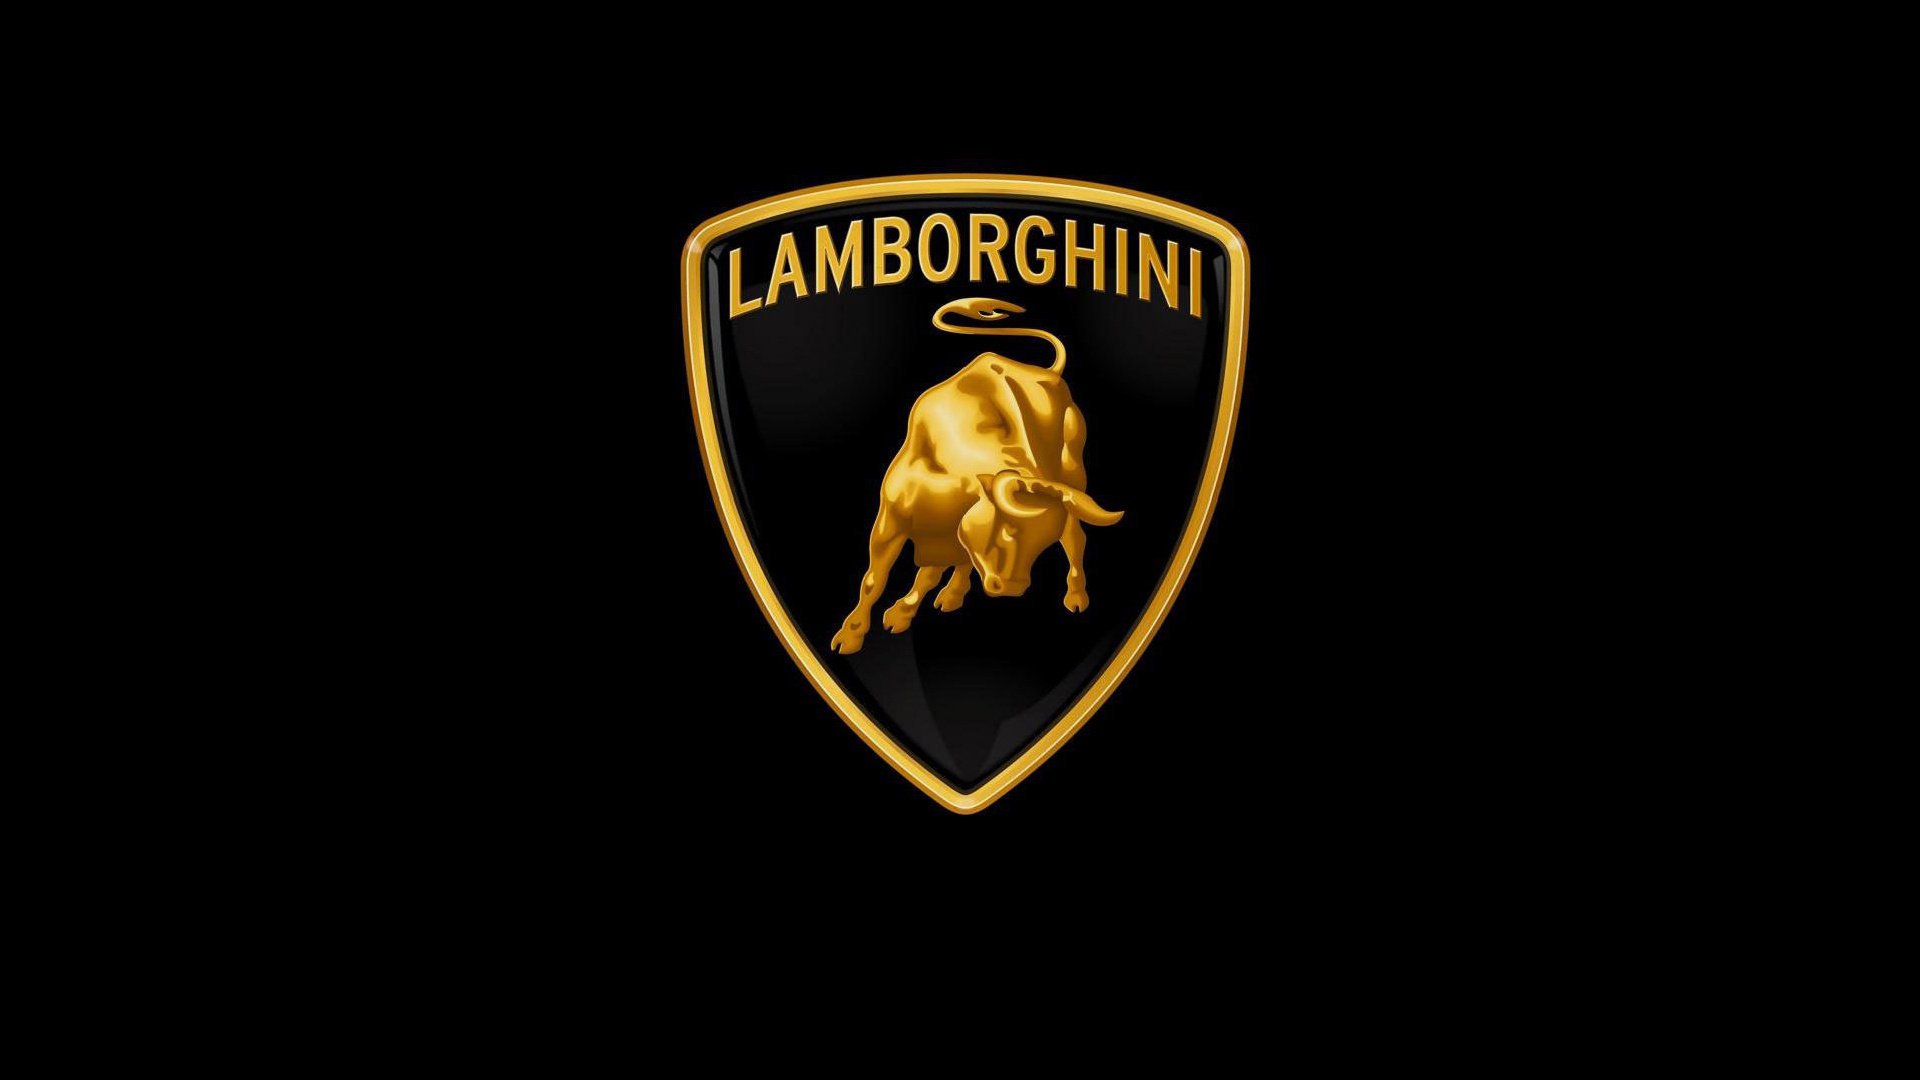 Lamborghini emblem on a black background